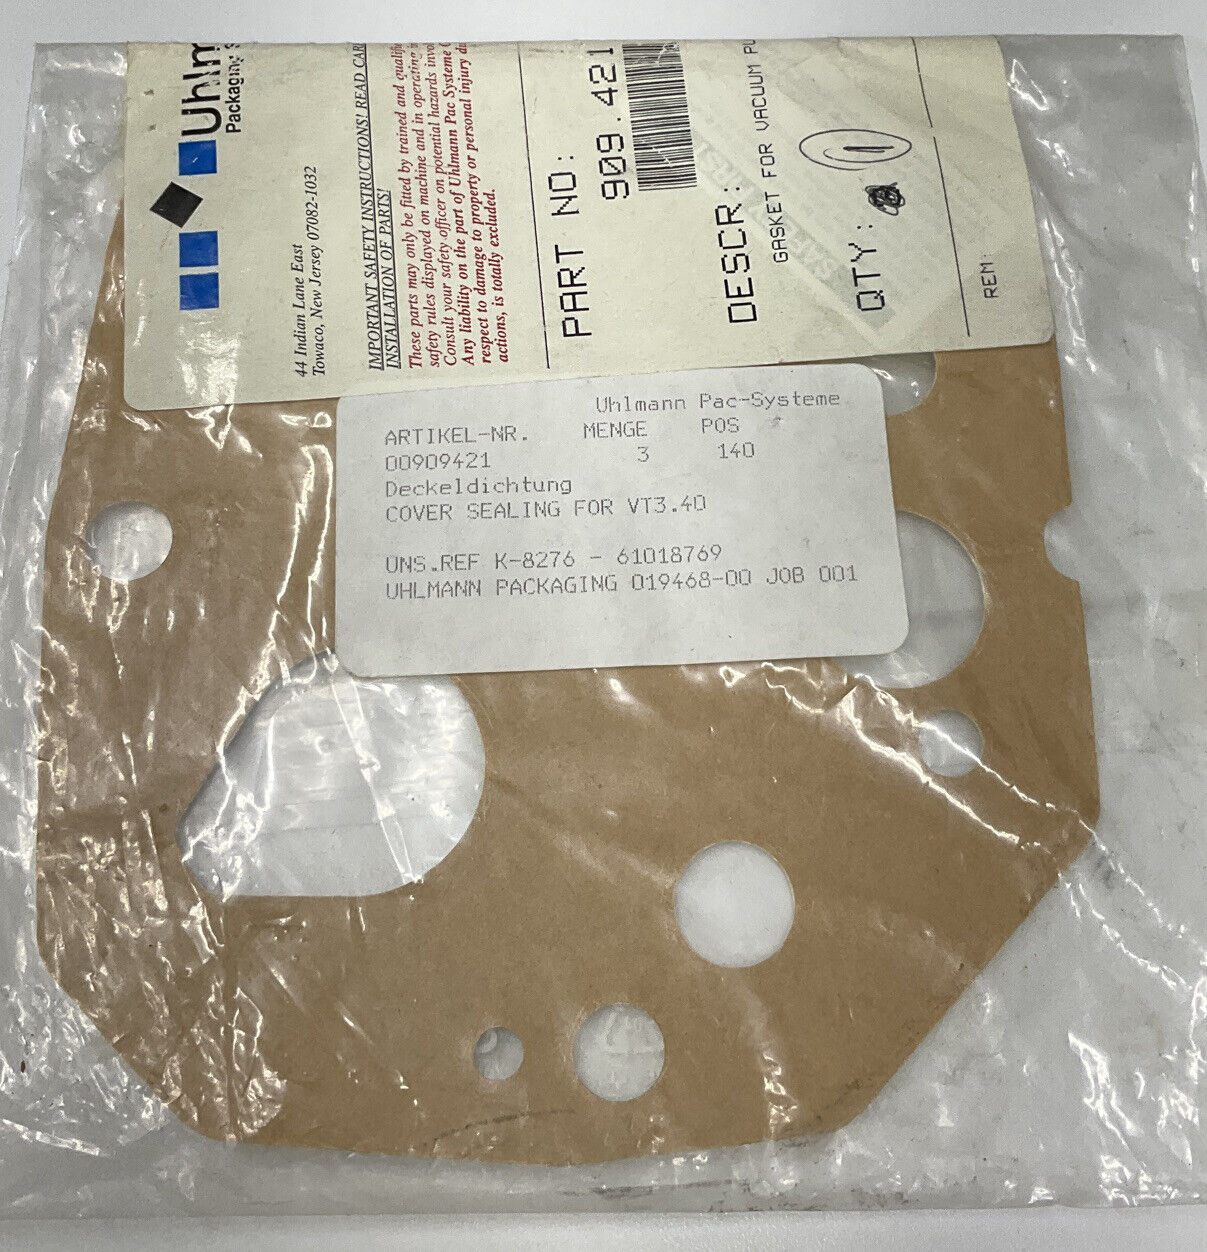 Uhlmann Packaging 909.421 / 00909421 Gasket for VT3.40 Pump (CL214) - 0